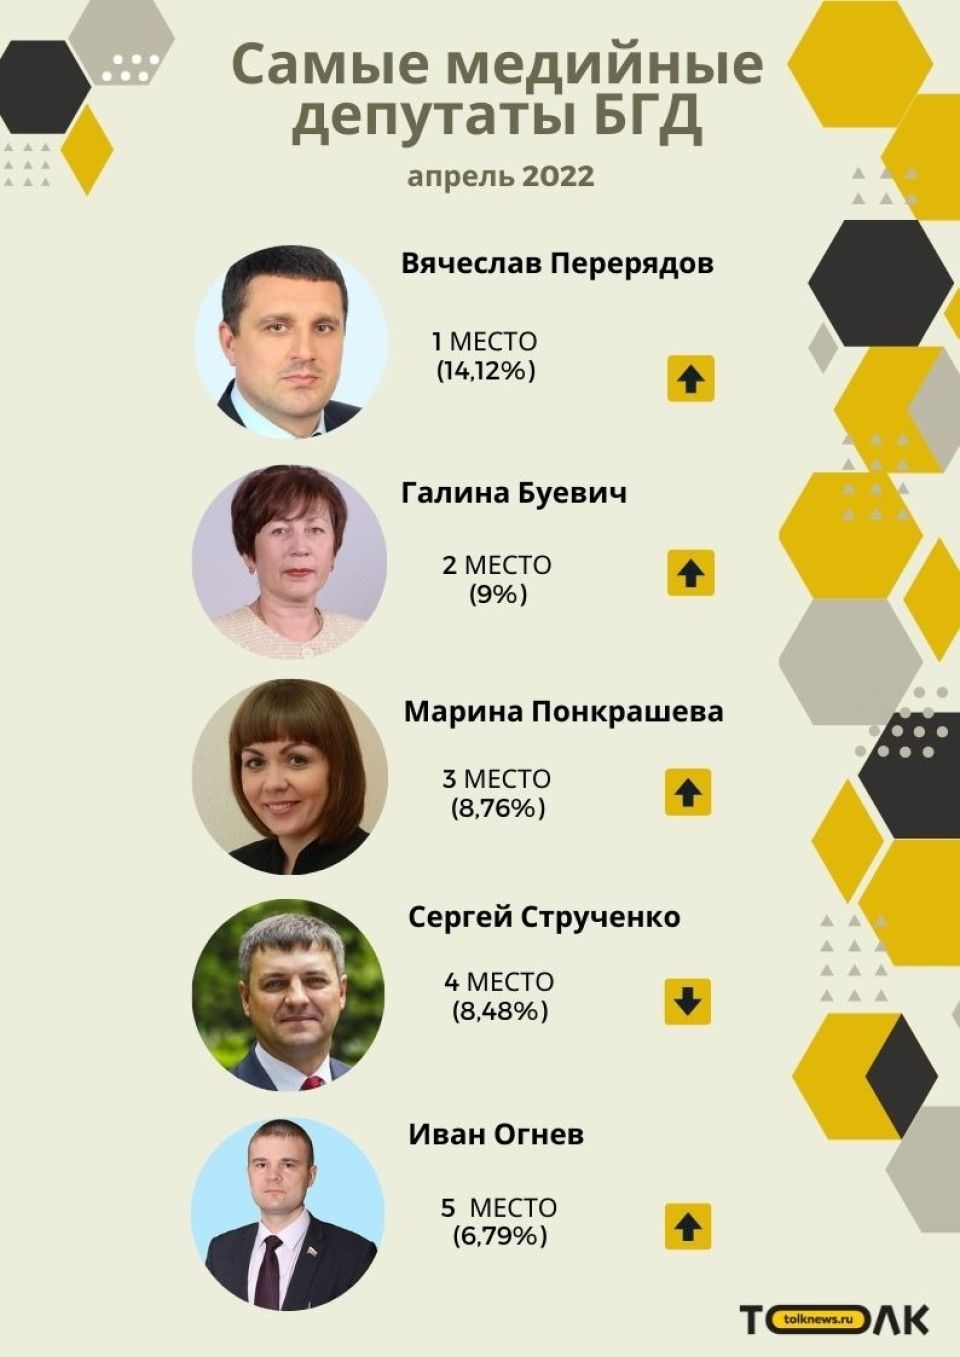 Рейтинг медийности депутатов БГД, апрель 2022 года